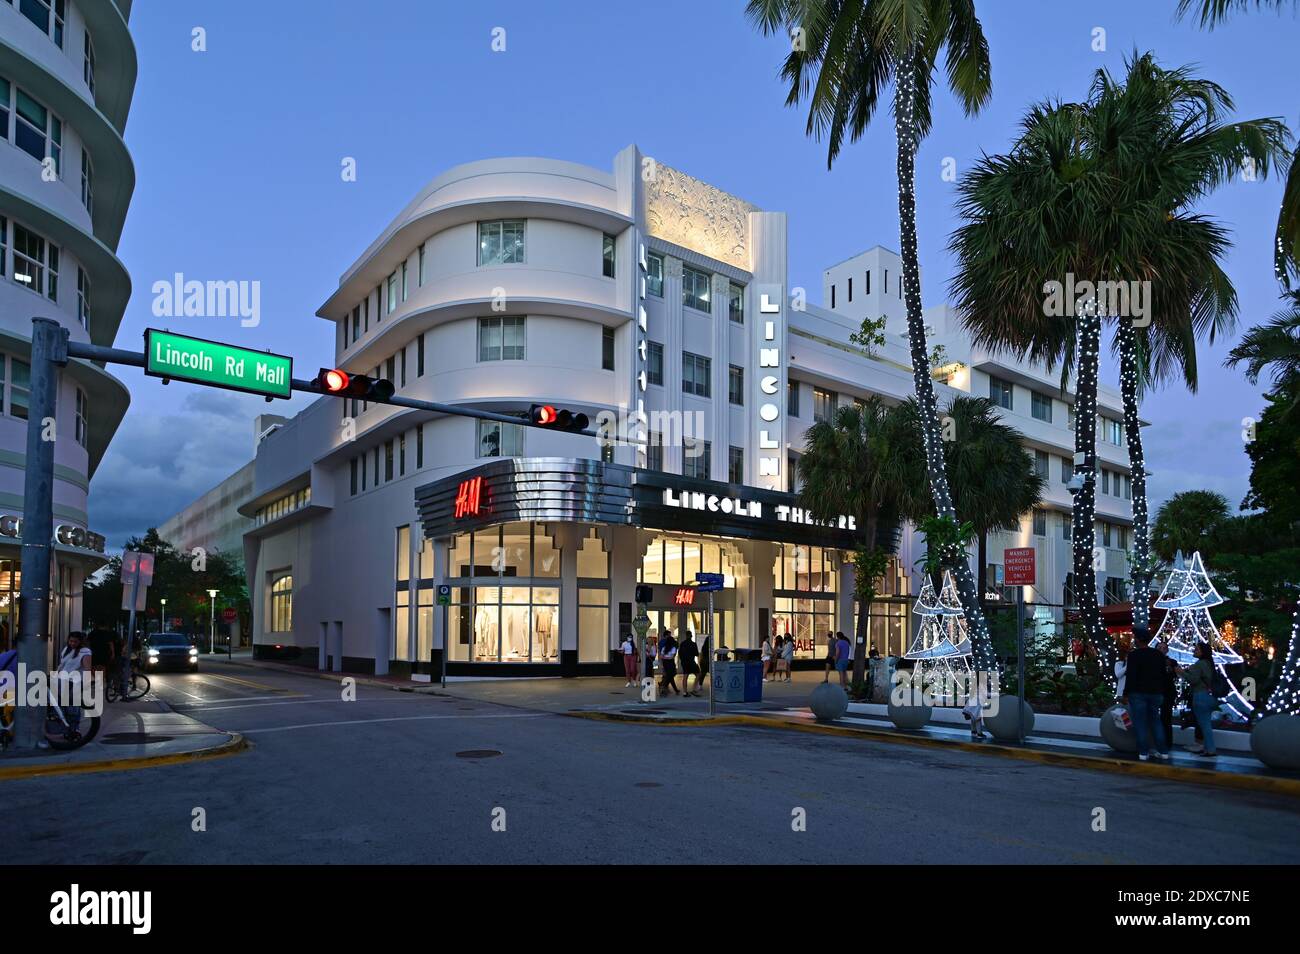 Miami Beach, Florida - December 19, 2020 - Lincoln Theatre on Lincoln Road Mall in Miami Beach, Florida at night. Stock Photo